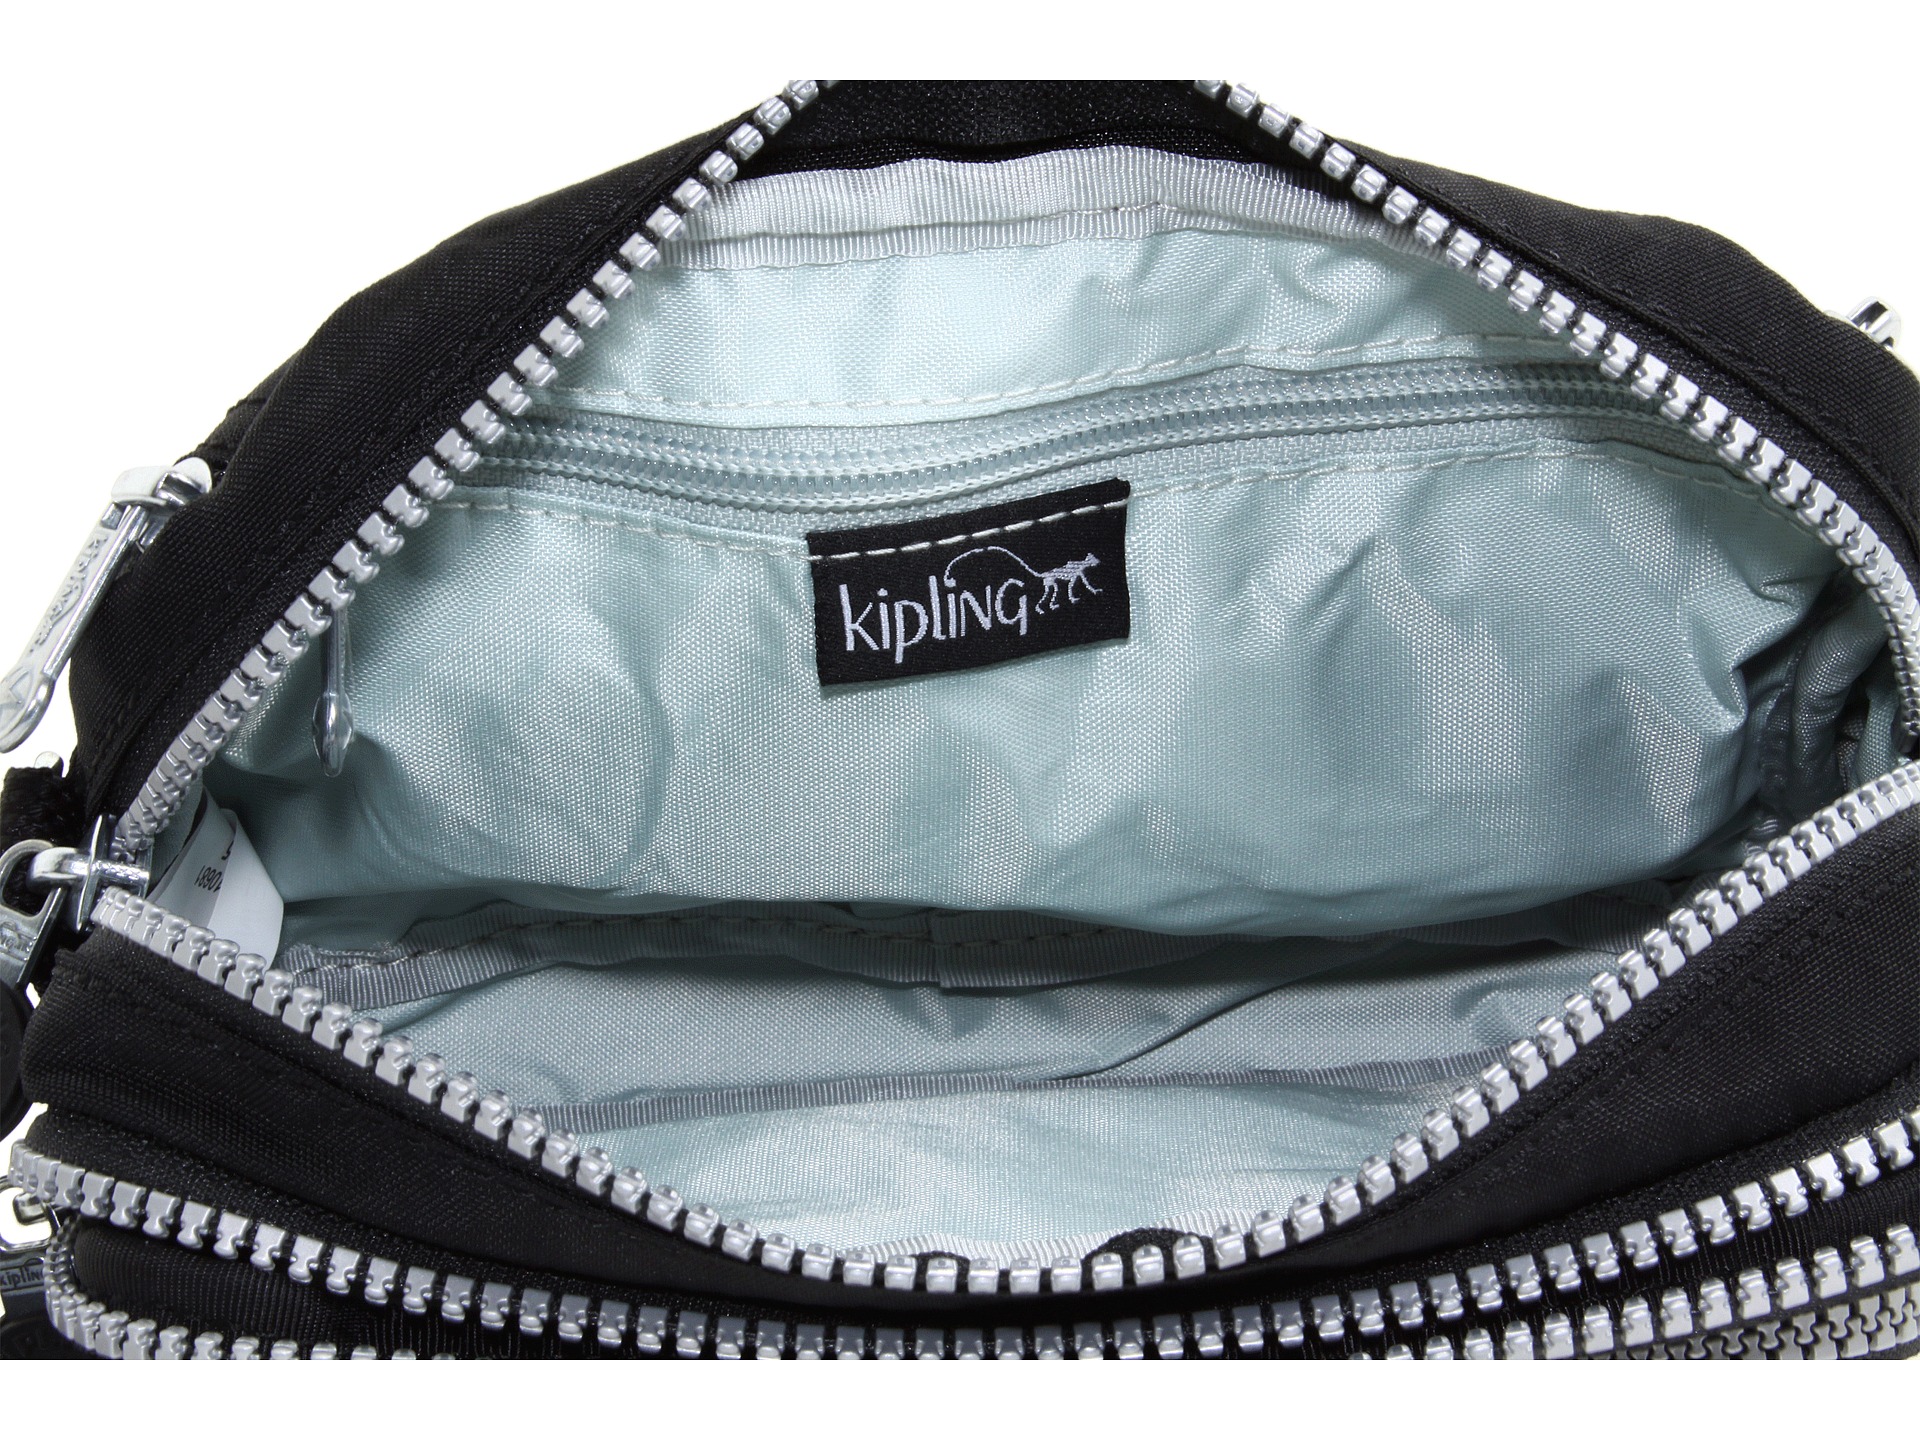 Kipling Multiple Belt Bag Shoulder Bag | Shipped Free at Zappos